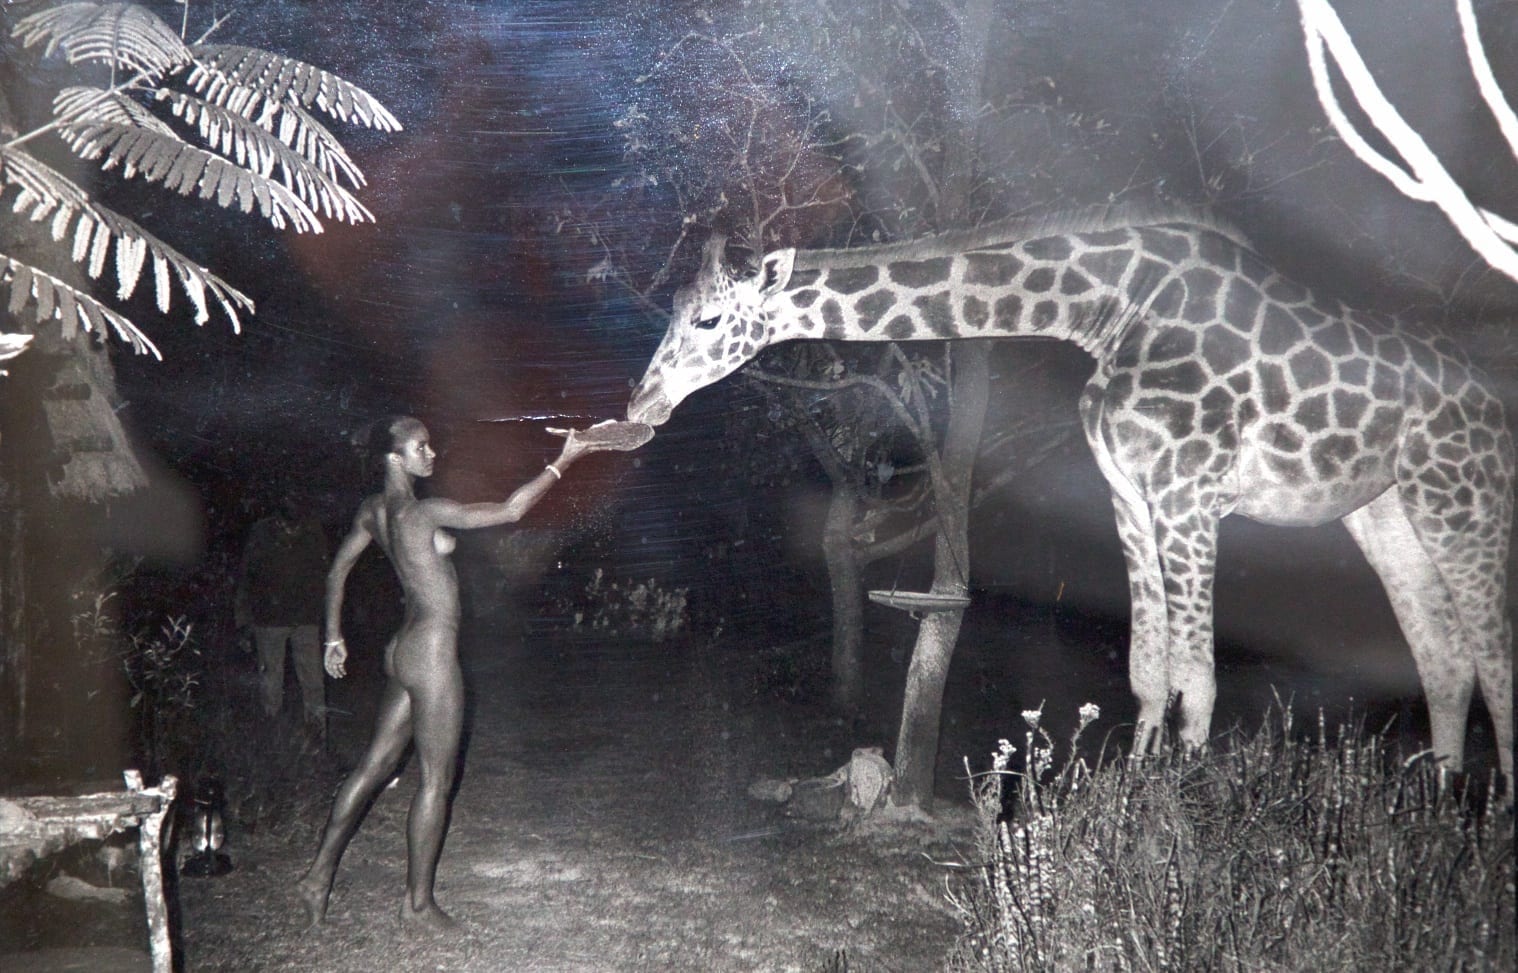 Peter Beard - Beyond Gauguin, Night Giraffe Feeding at 